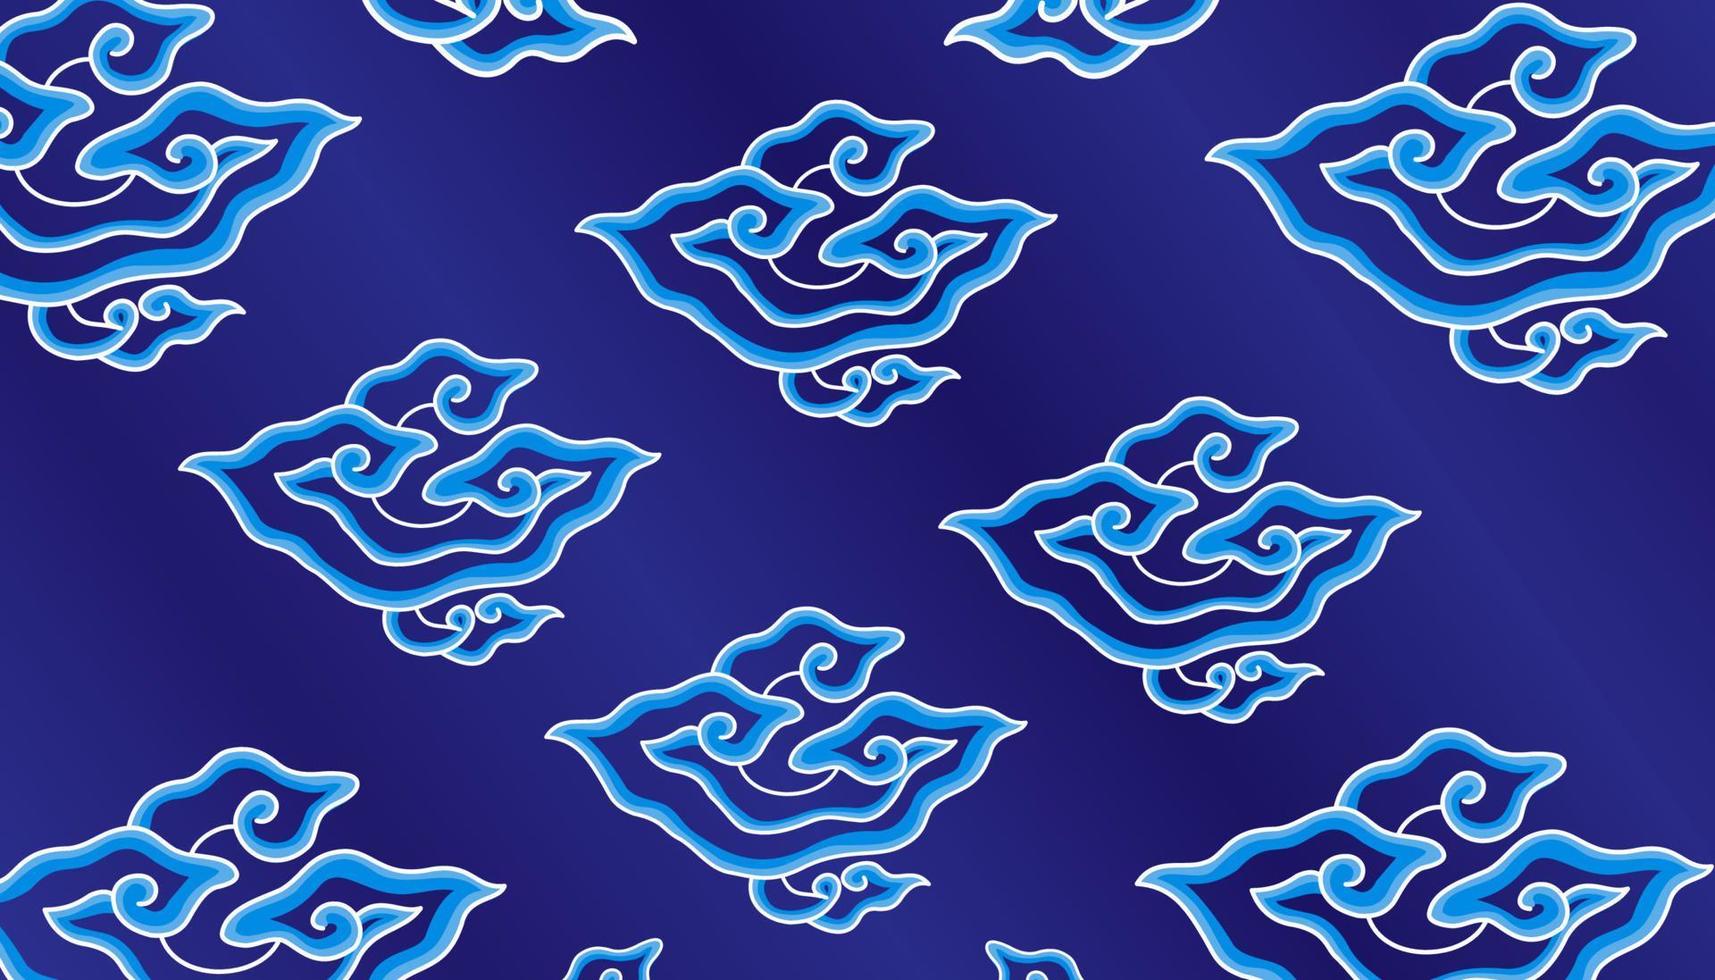 Vektor Batik megandung blau